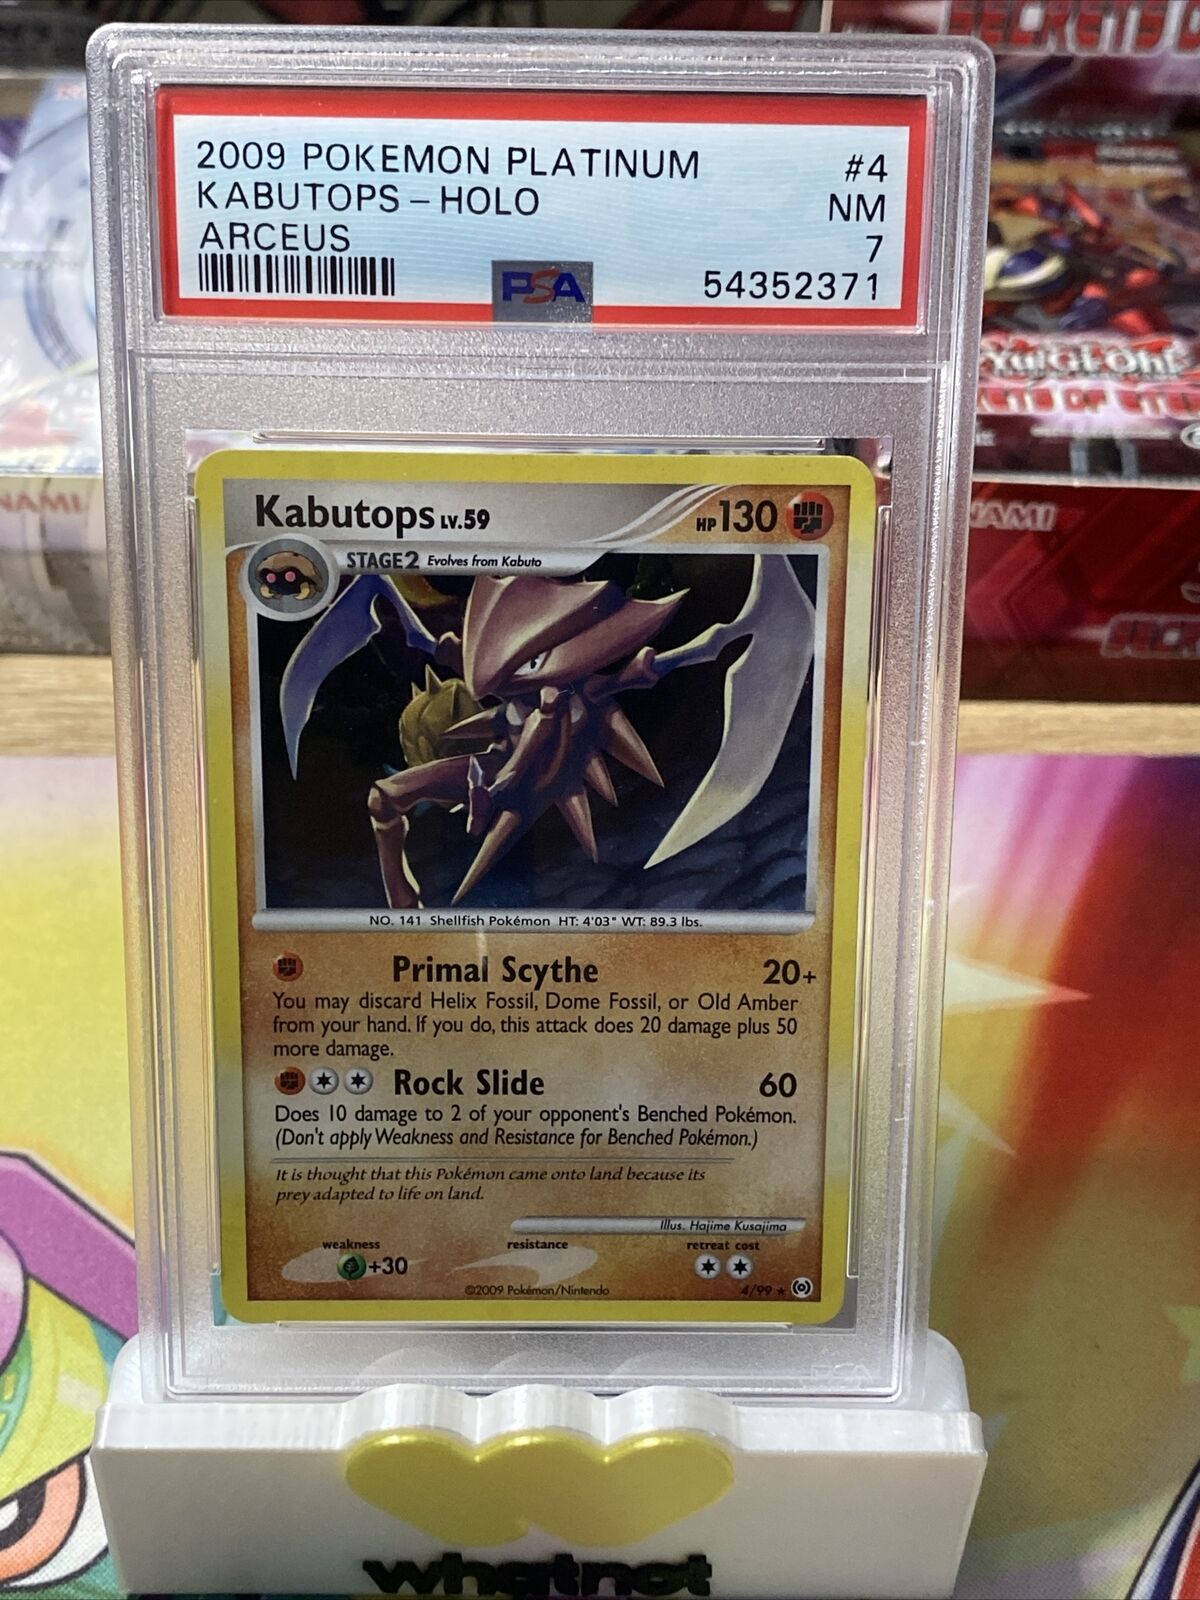 2009 Pokémon Platinum Arceus - Kabutops 4/99 - PSA 7 Holo